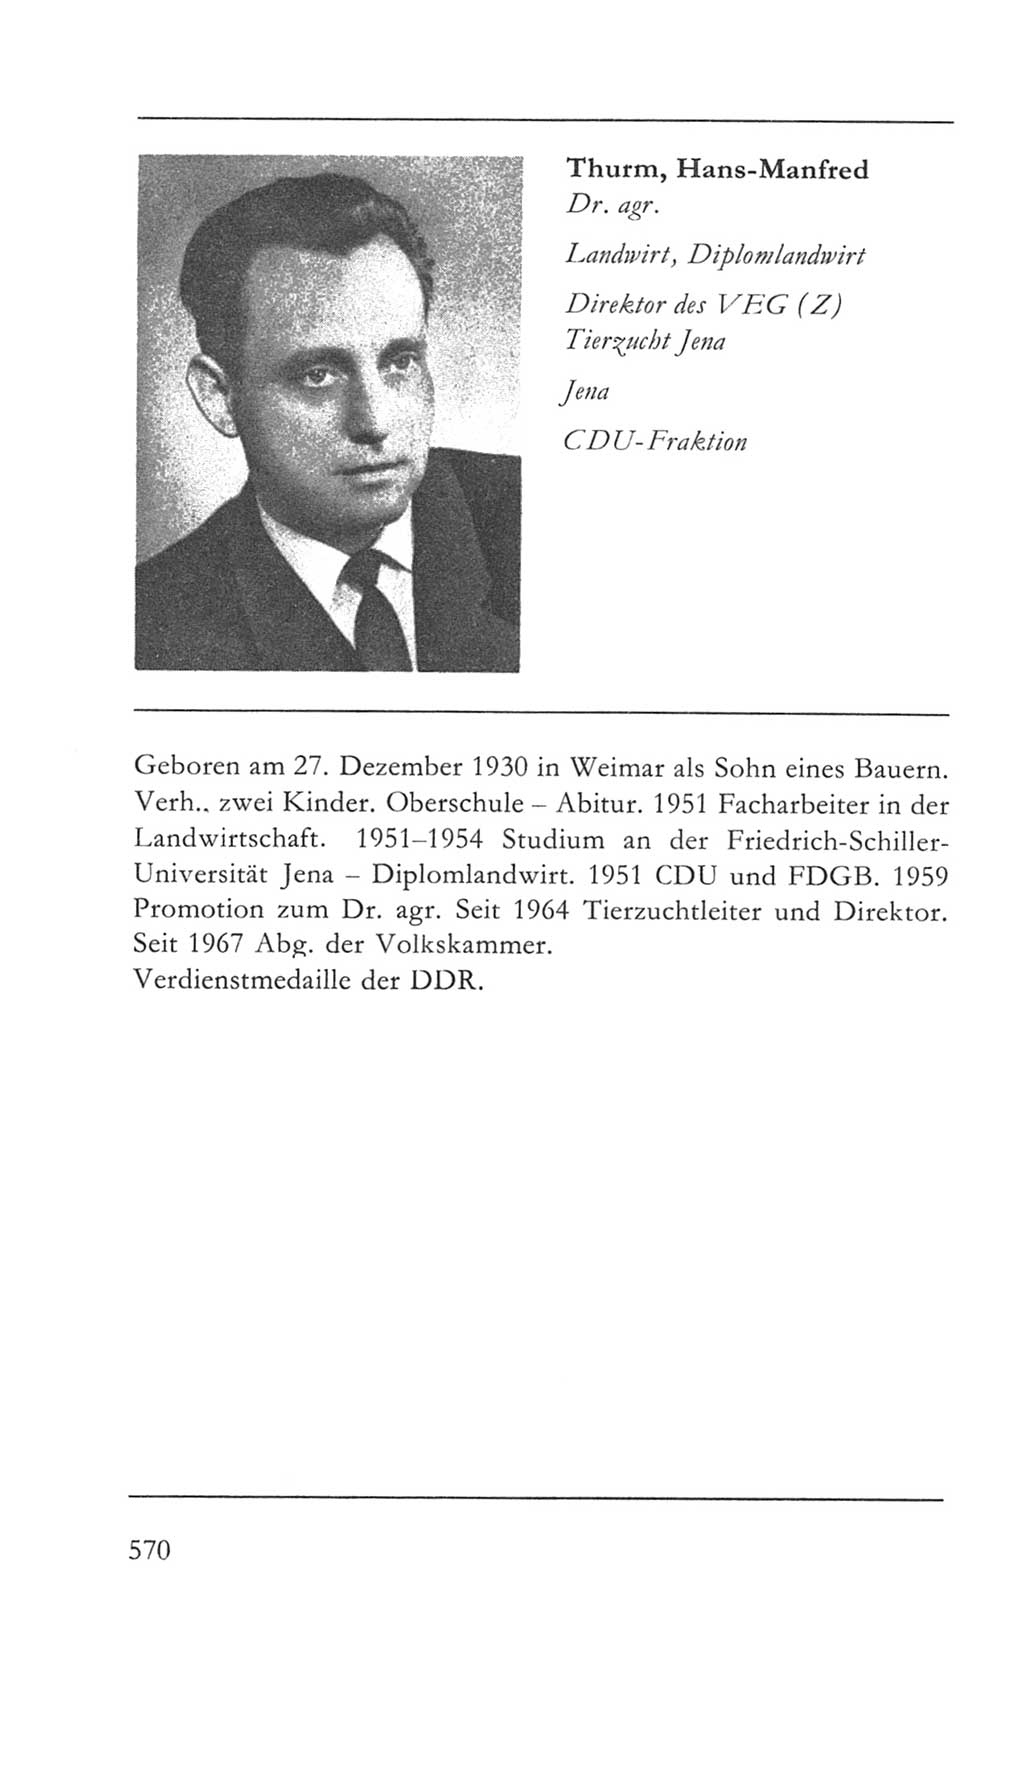 Volkskammer (VK) der Deutschen Demokratischen Republik (DDR) 5. Wahlperiode 1967-1971, Seite 570 (VK. DDR 5. WP. 1967-1971, S. 570)